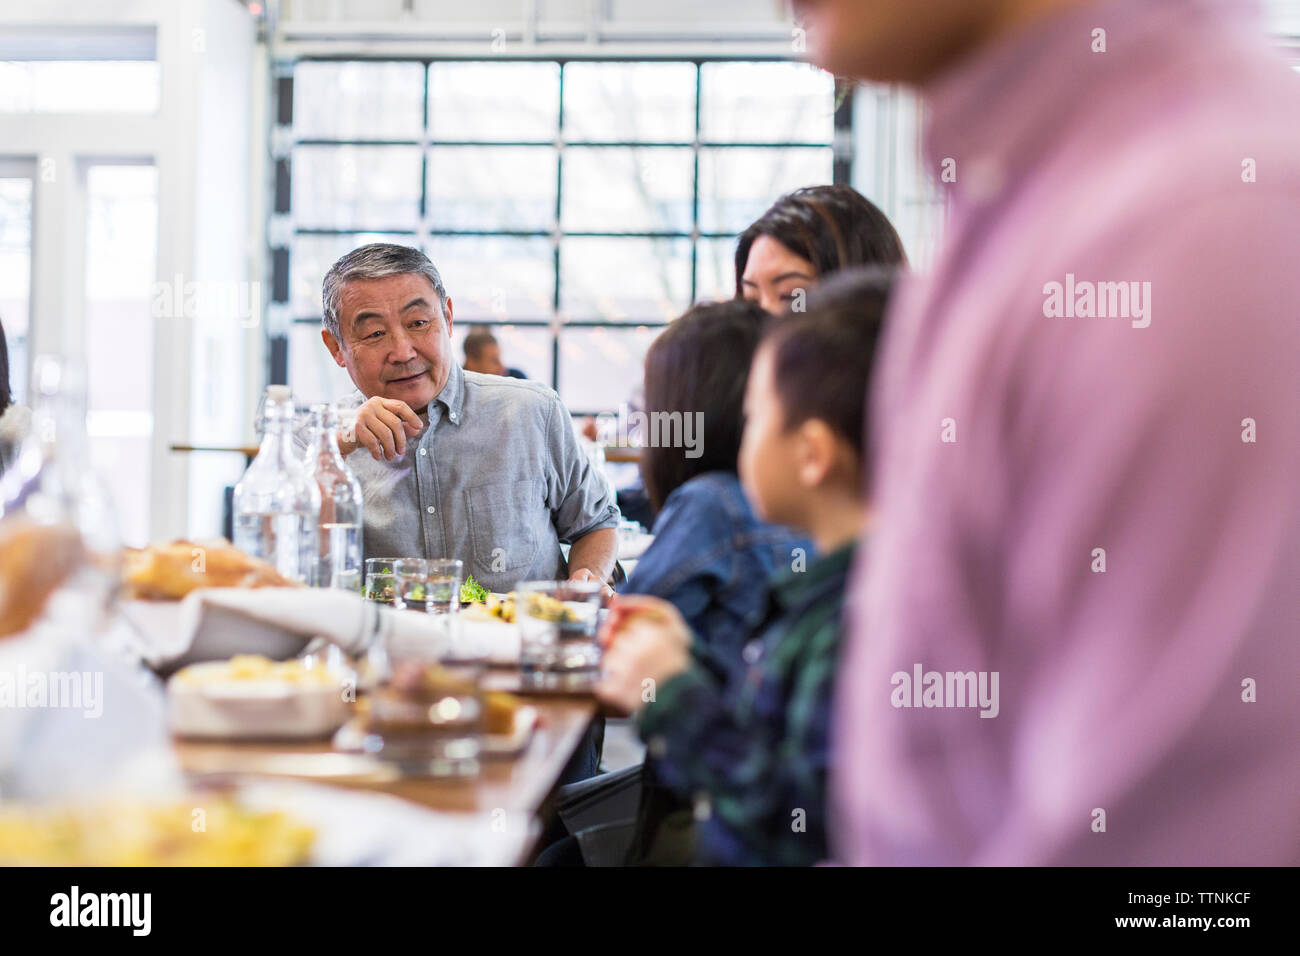 Family enjoying lunch in restaurant Stock Photo